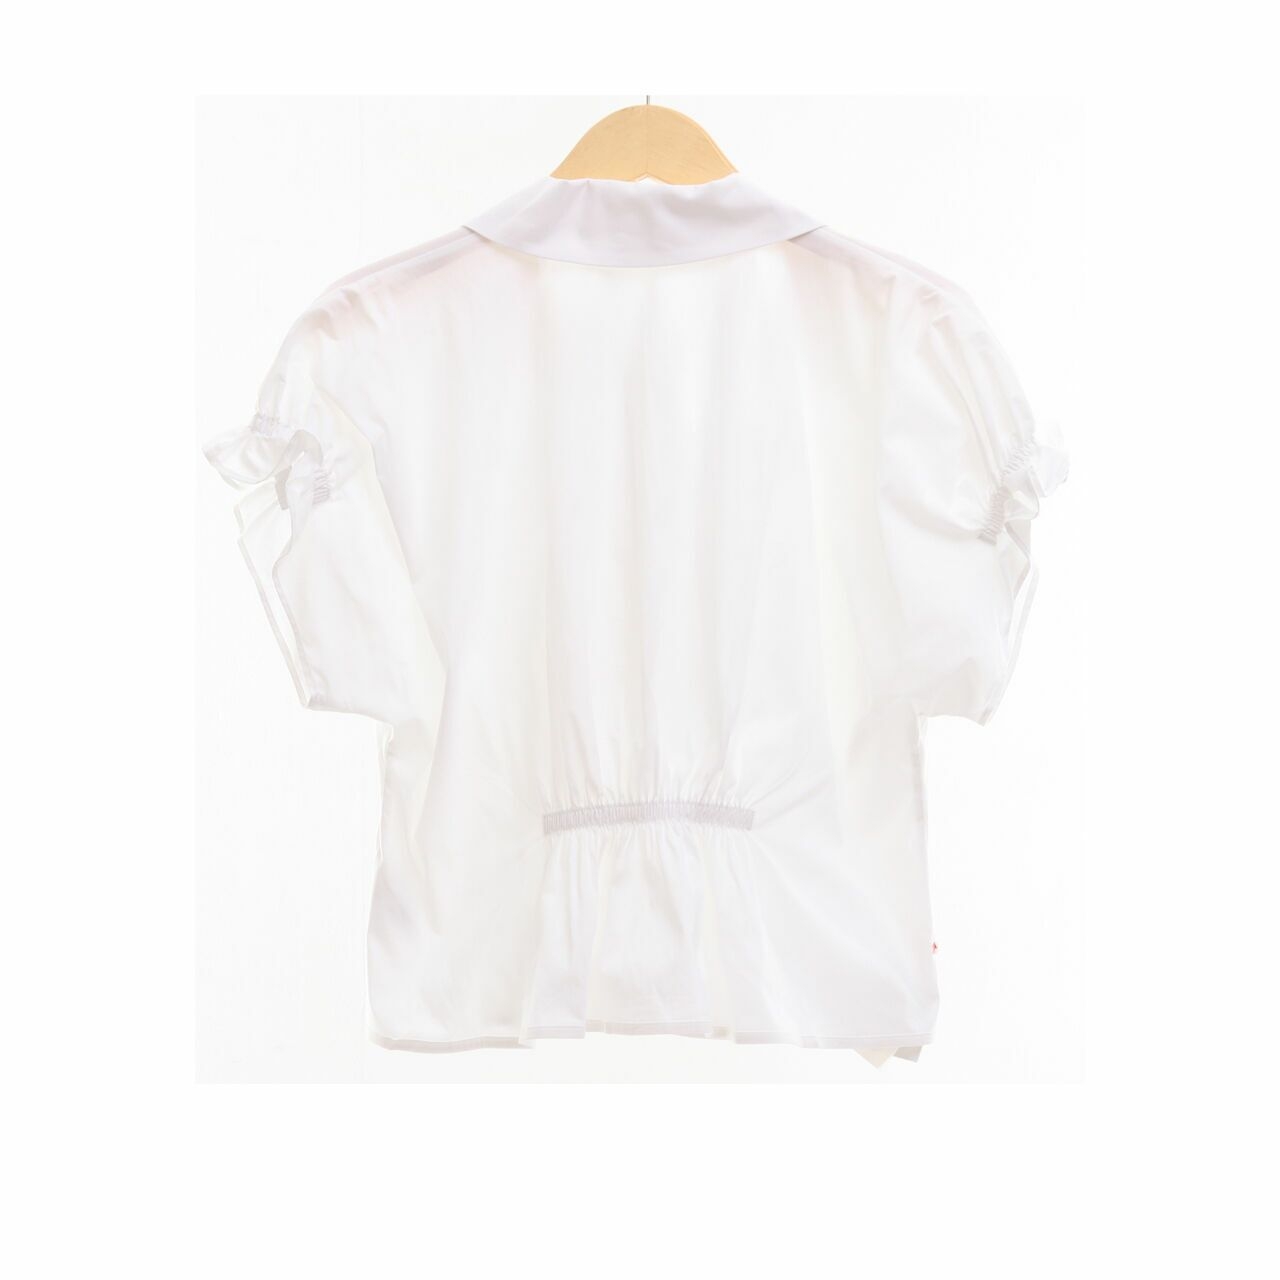 COS White Shirt